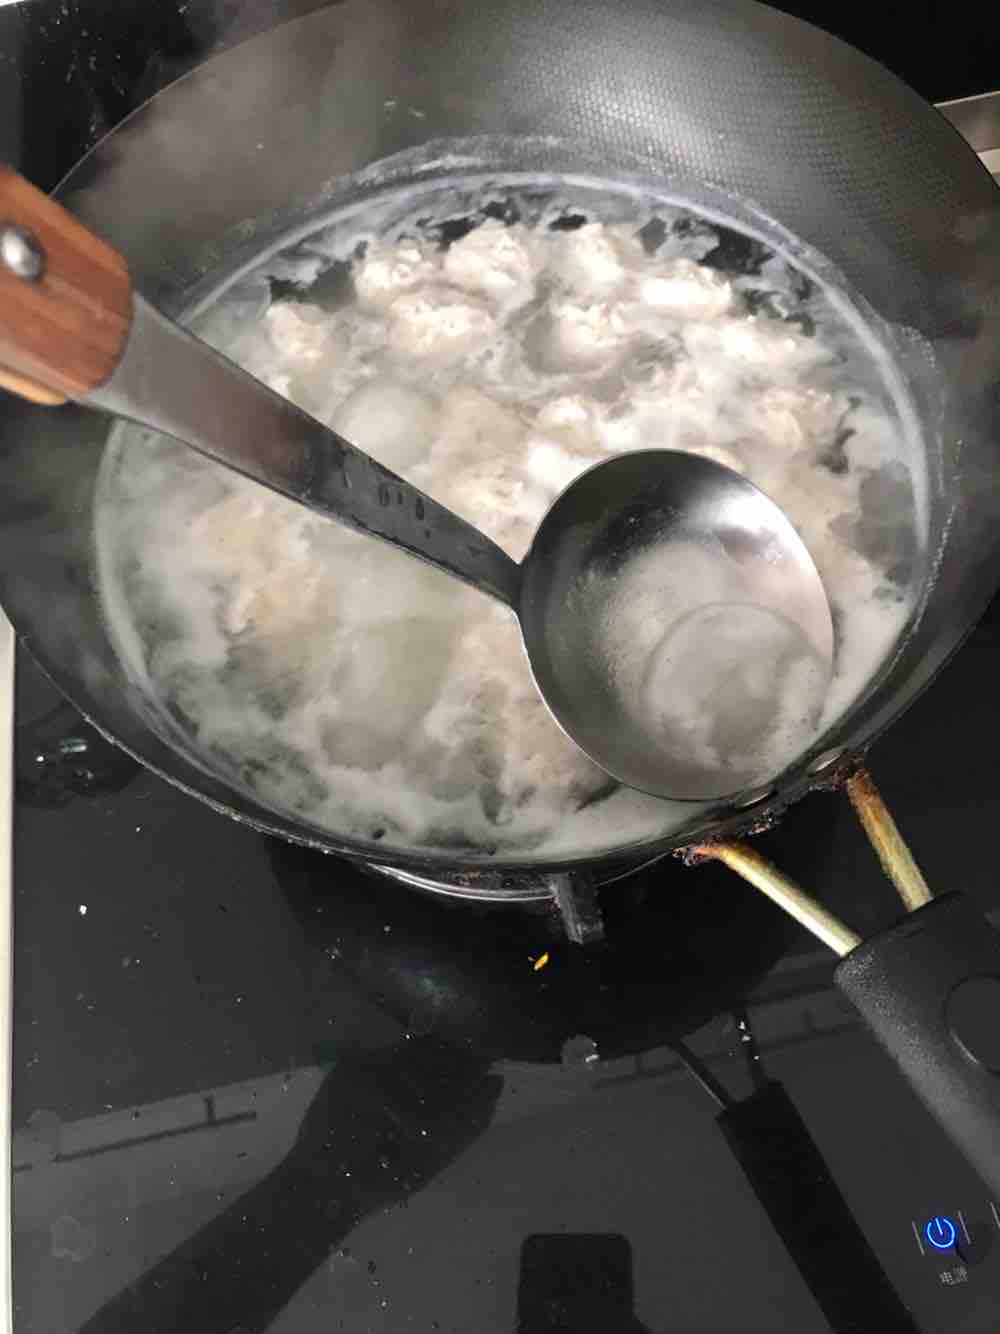 Seaweed Fish Ball Soup recipe